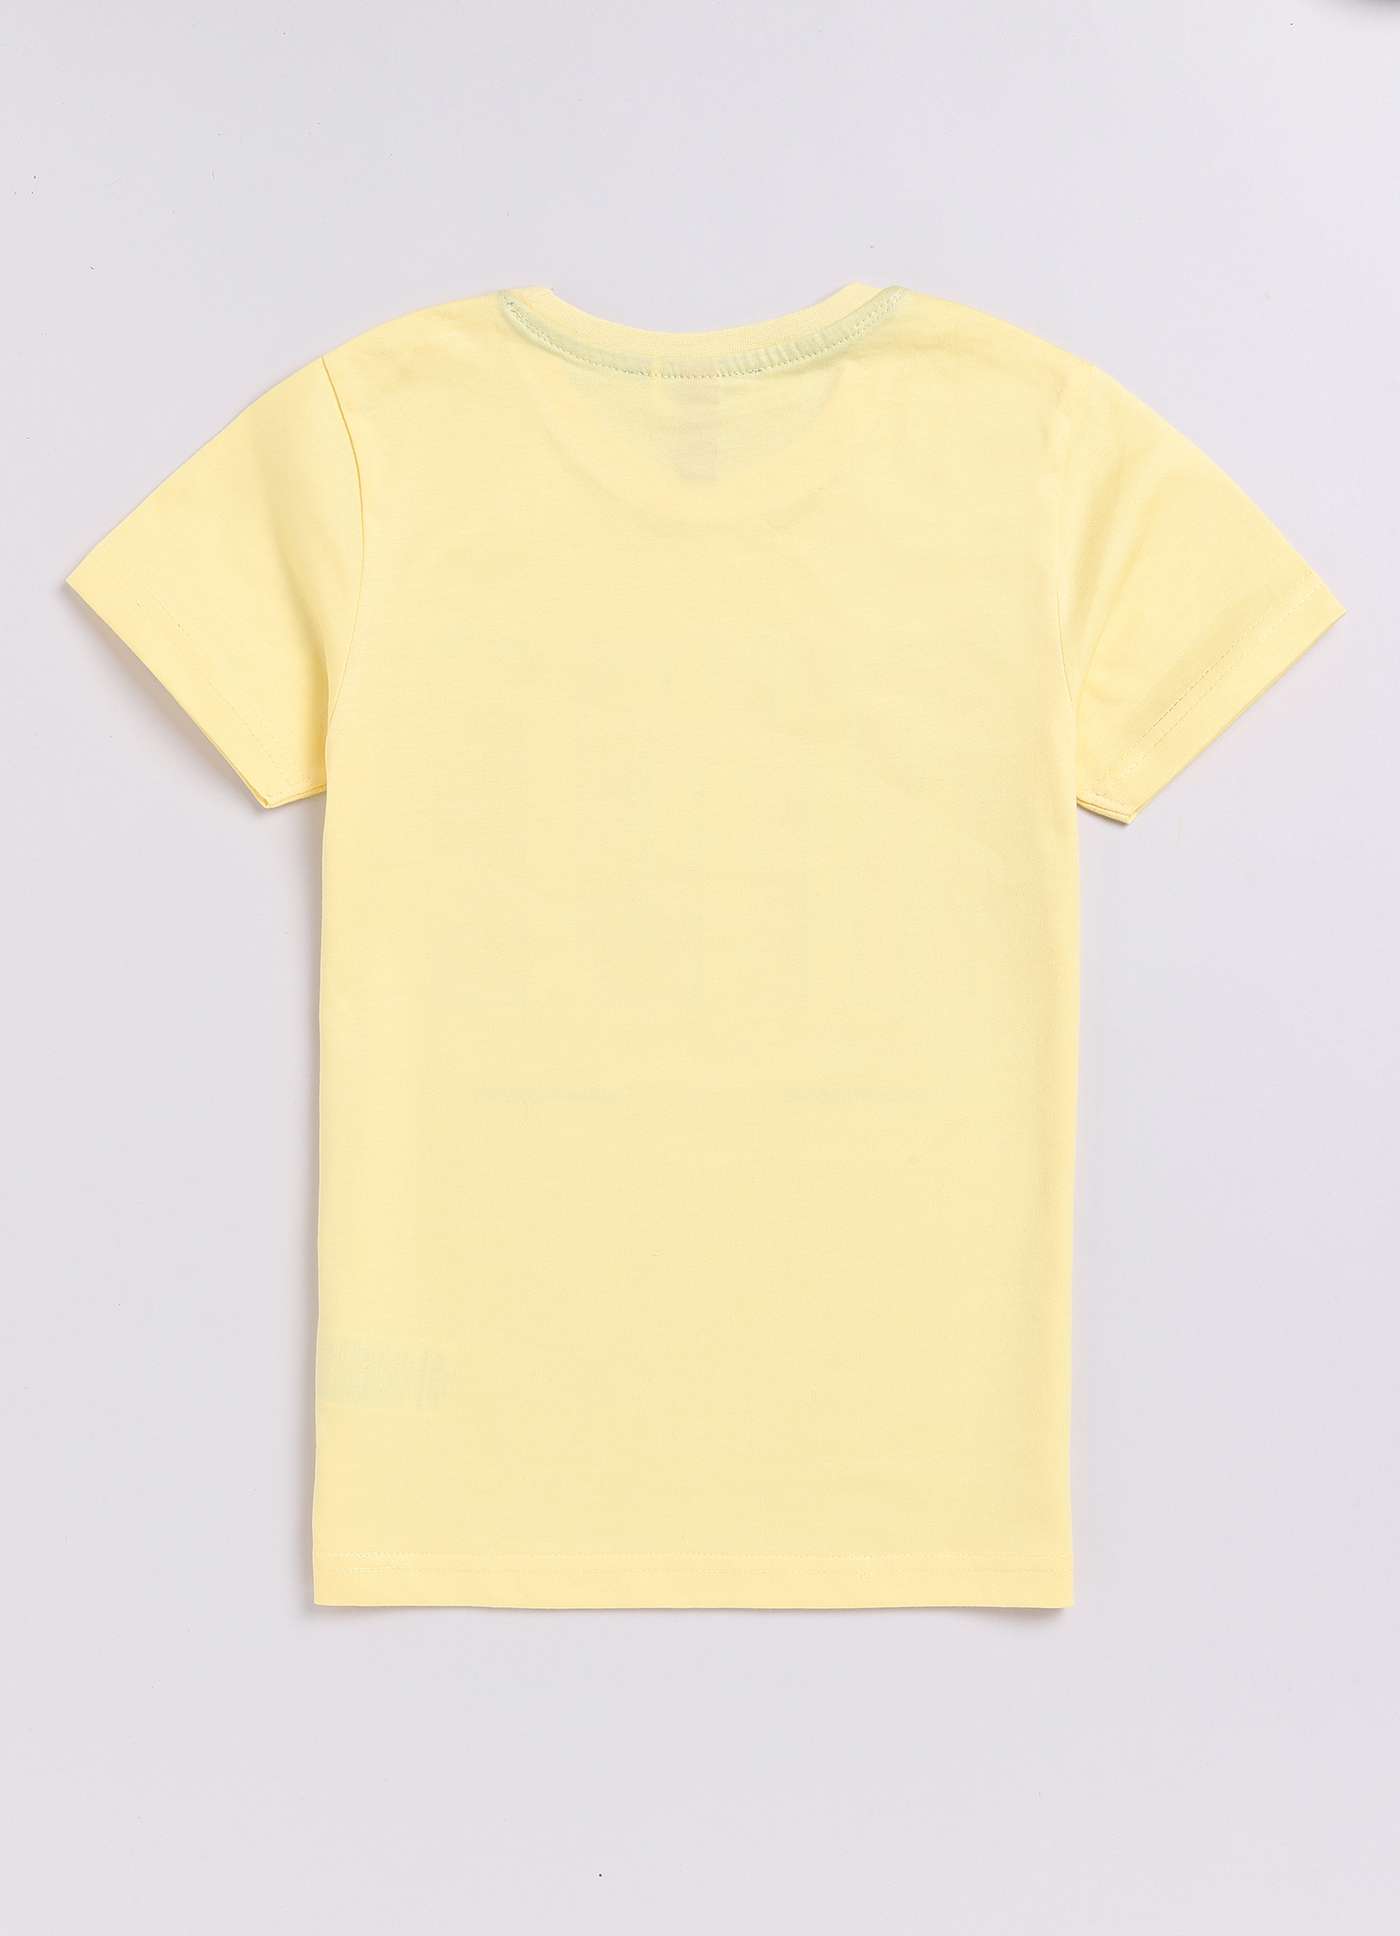 Enjoy Your Ride Print Design Pale Color cotton t-shirt for boys